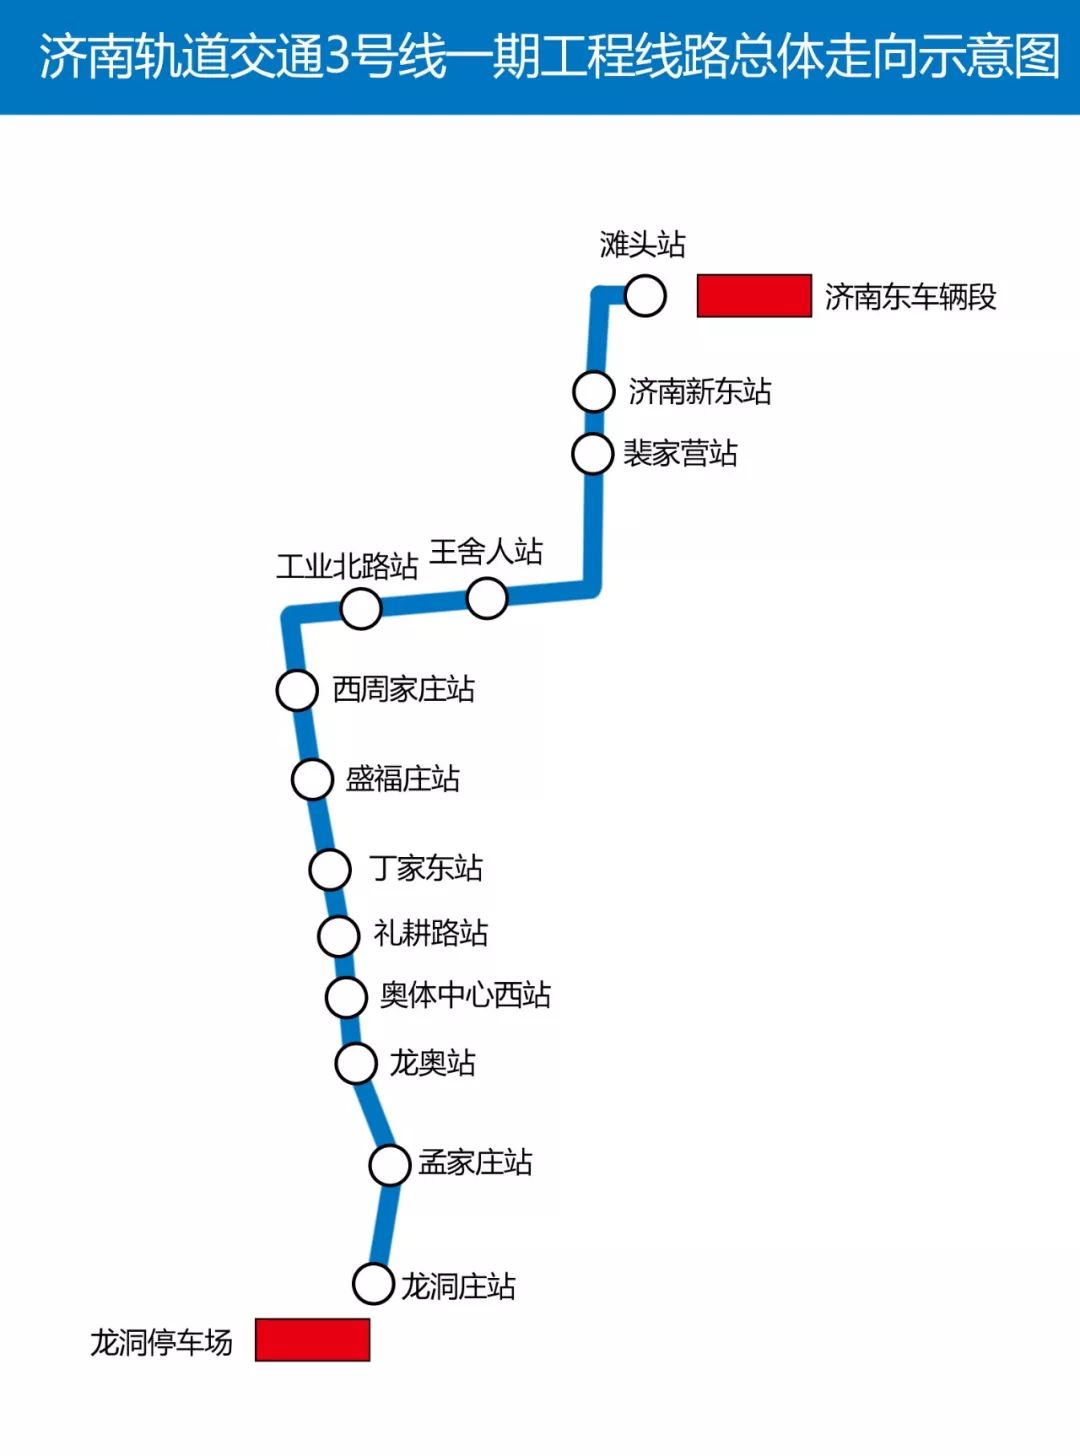 济南地铁开通了几条线图片